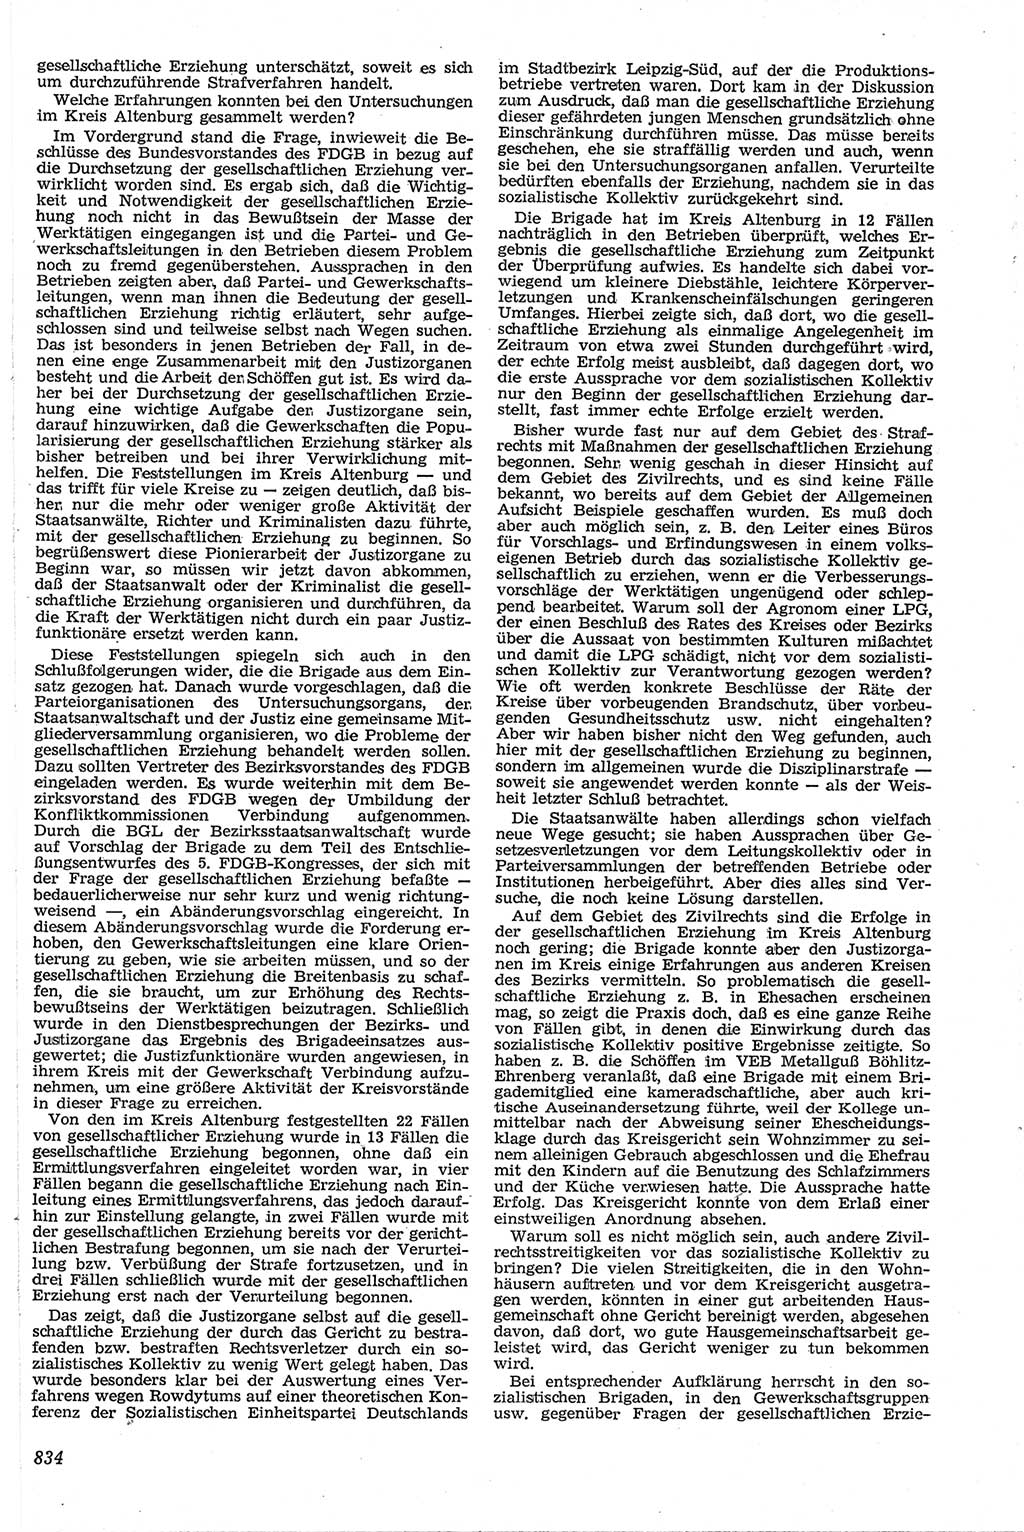 Neue Justiz (NJ), Zeitschrift für Recht und Rechtswissenschaft [Deutsche Demokratische Republik (DDR)], 13. Jahrgang 1959, Seite 834 (NJ DDR 1959, S. 834)